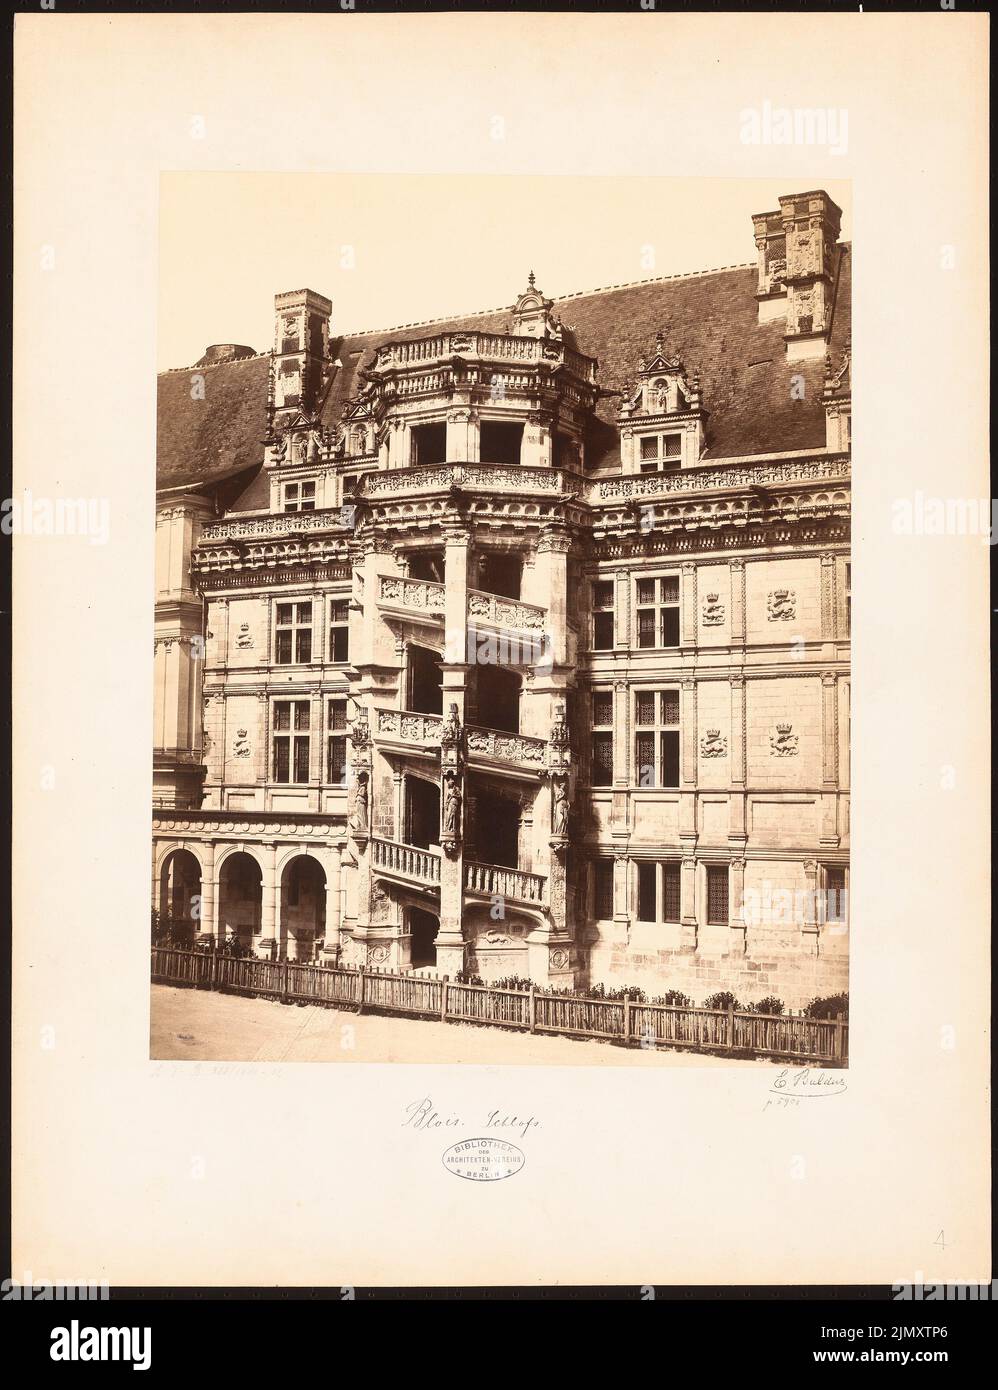 N.N., Castello, Blois (senza DAT.): Vista della scala a chiocciola nel cortile del castello. Foto su carta, 63 x 48,4 cm (inclusi i bordi di scansione) Foto Stock